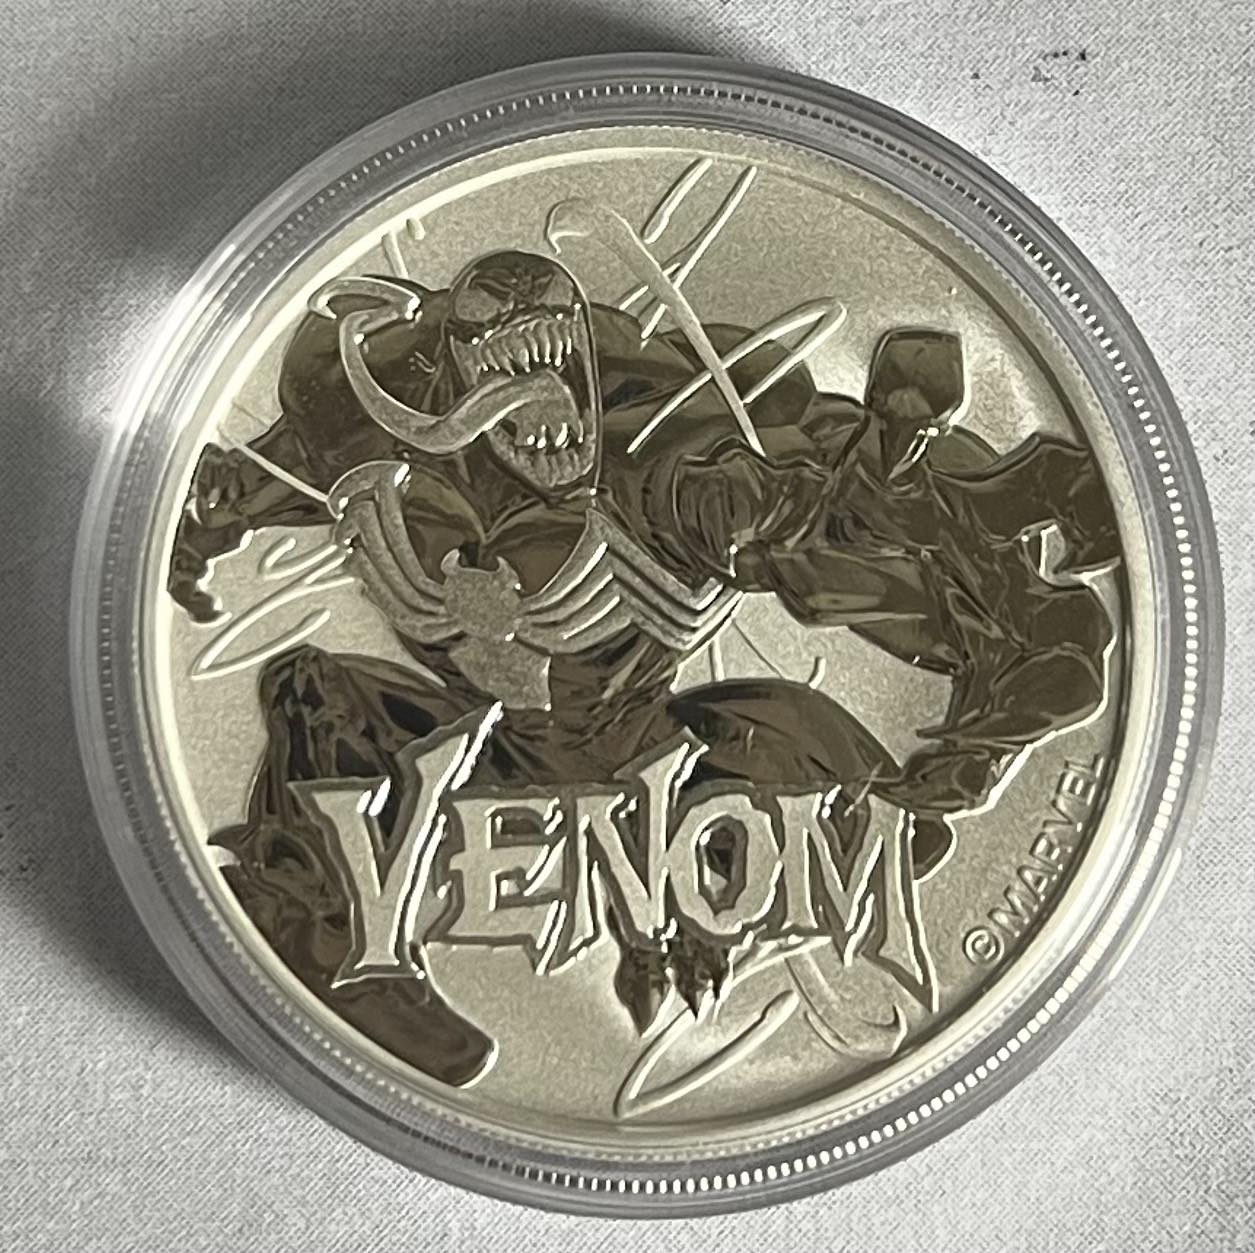 2020 Tuvalu $1 Marvel Series Venom 1 oz Silver Coin BU in Capsule